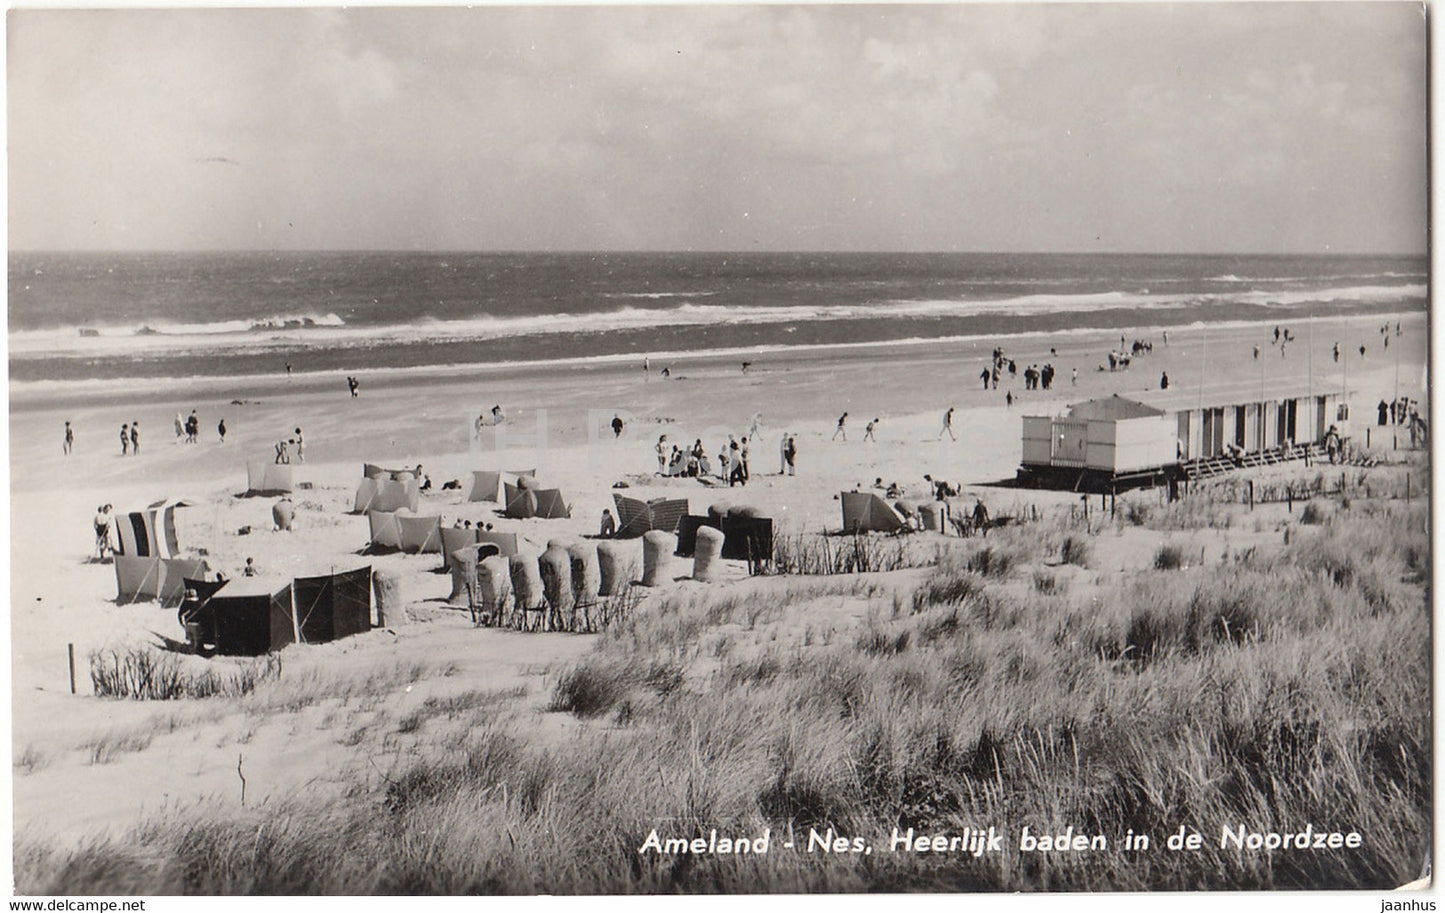 Ameland - Nes Heerlijk baden in de Noordzee - beach - 1963 - Netherlands - used - JH Postcards